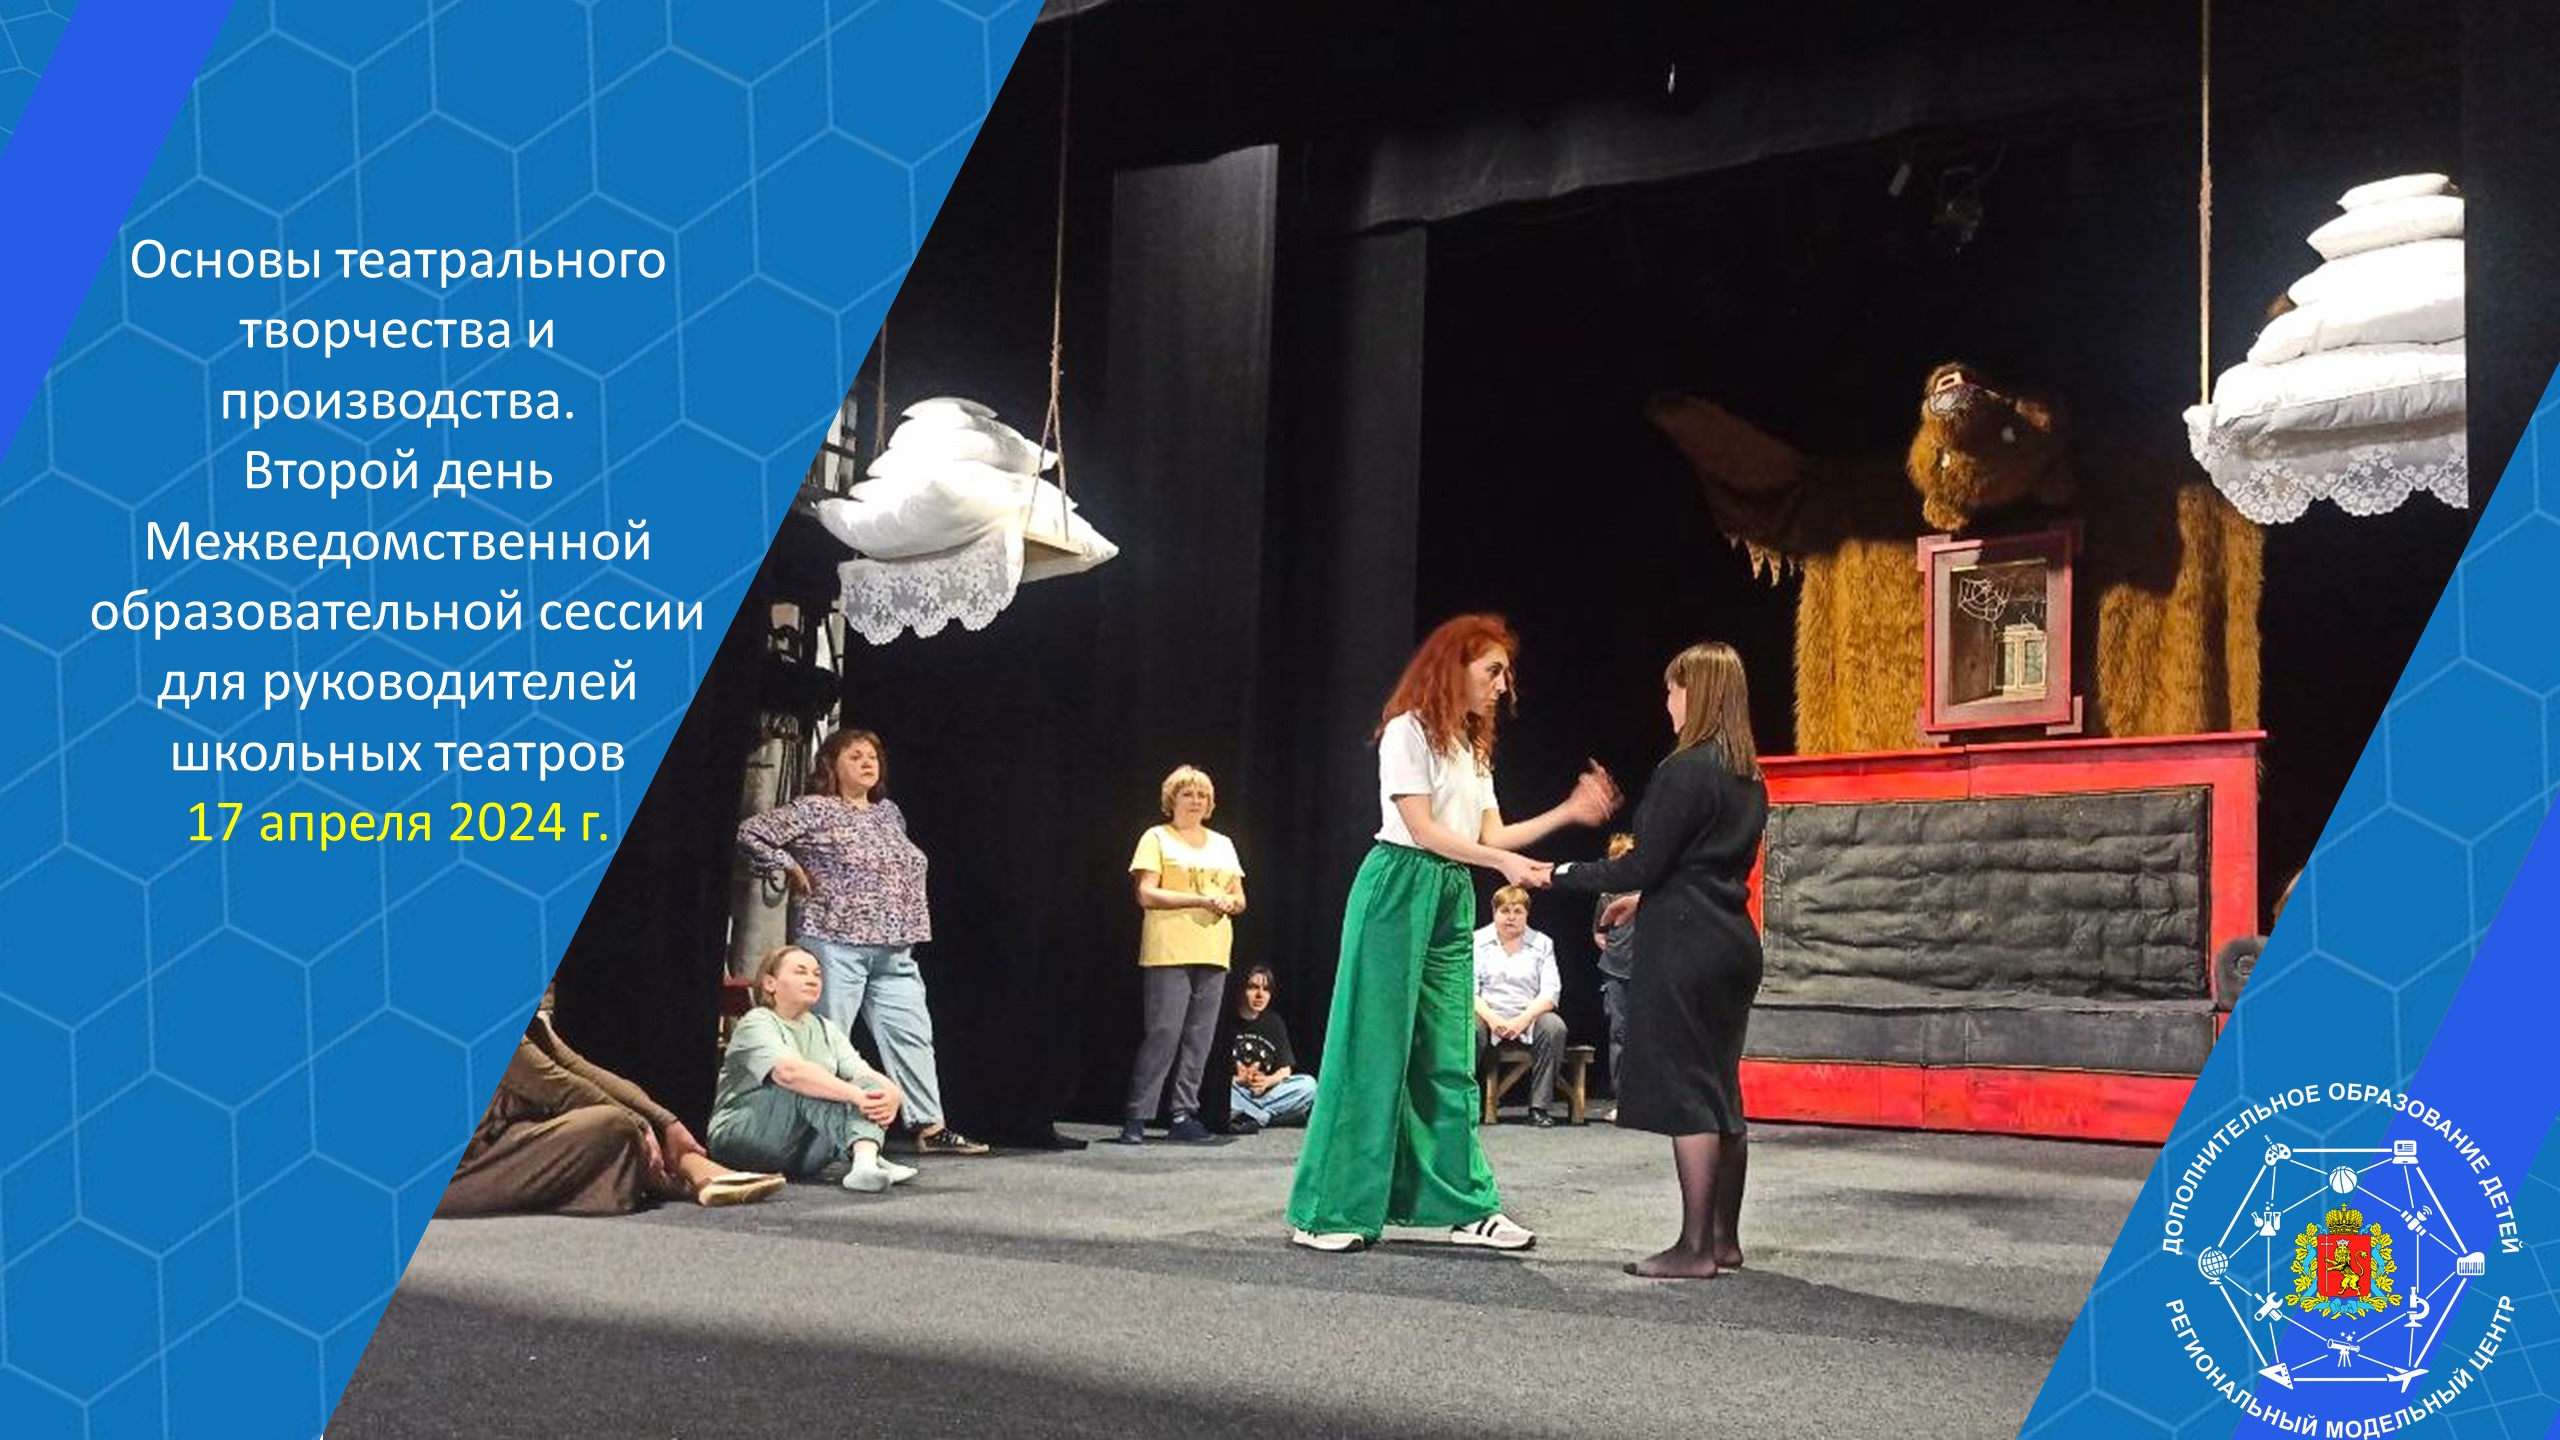 Участники межведомственной образовательной сессии руководителей школьных театров продолжают познавать азы театрального творчества и производства.